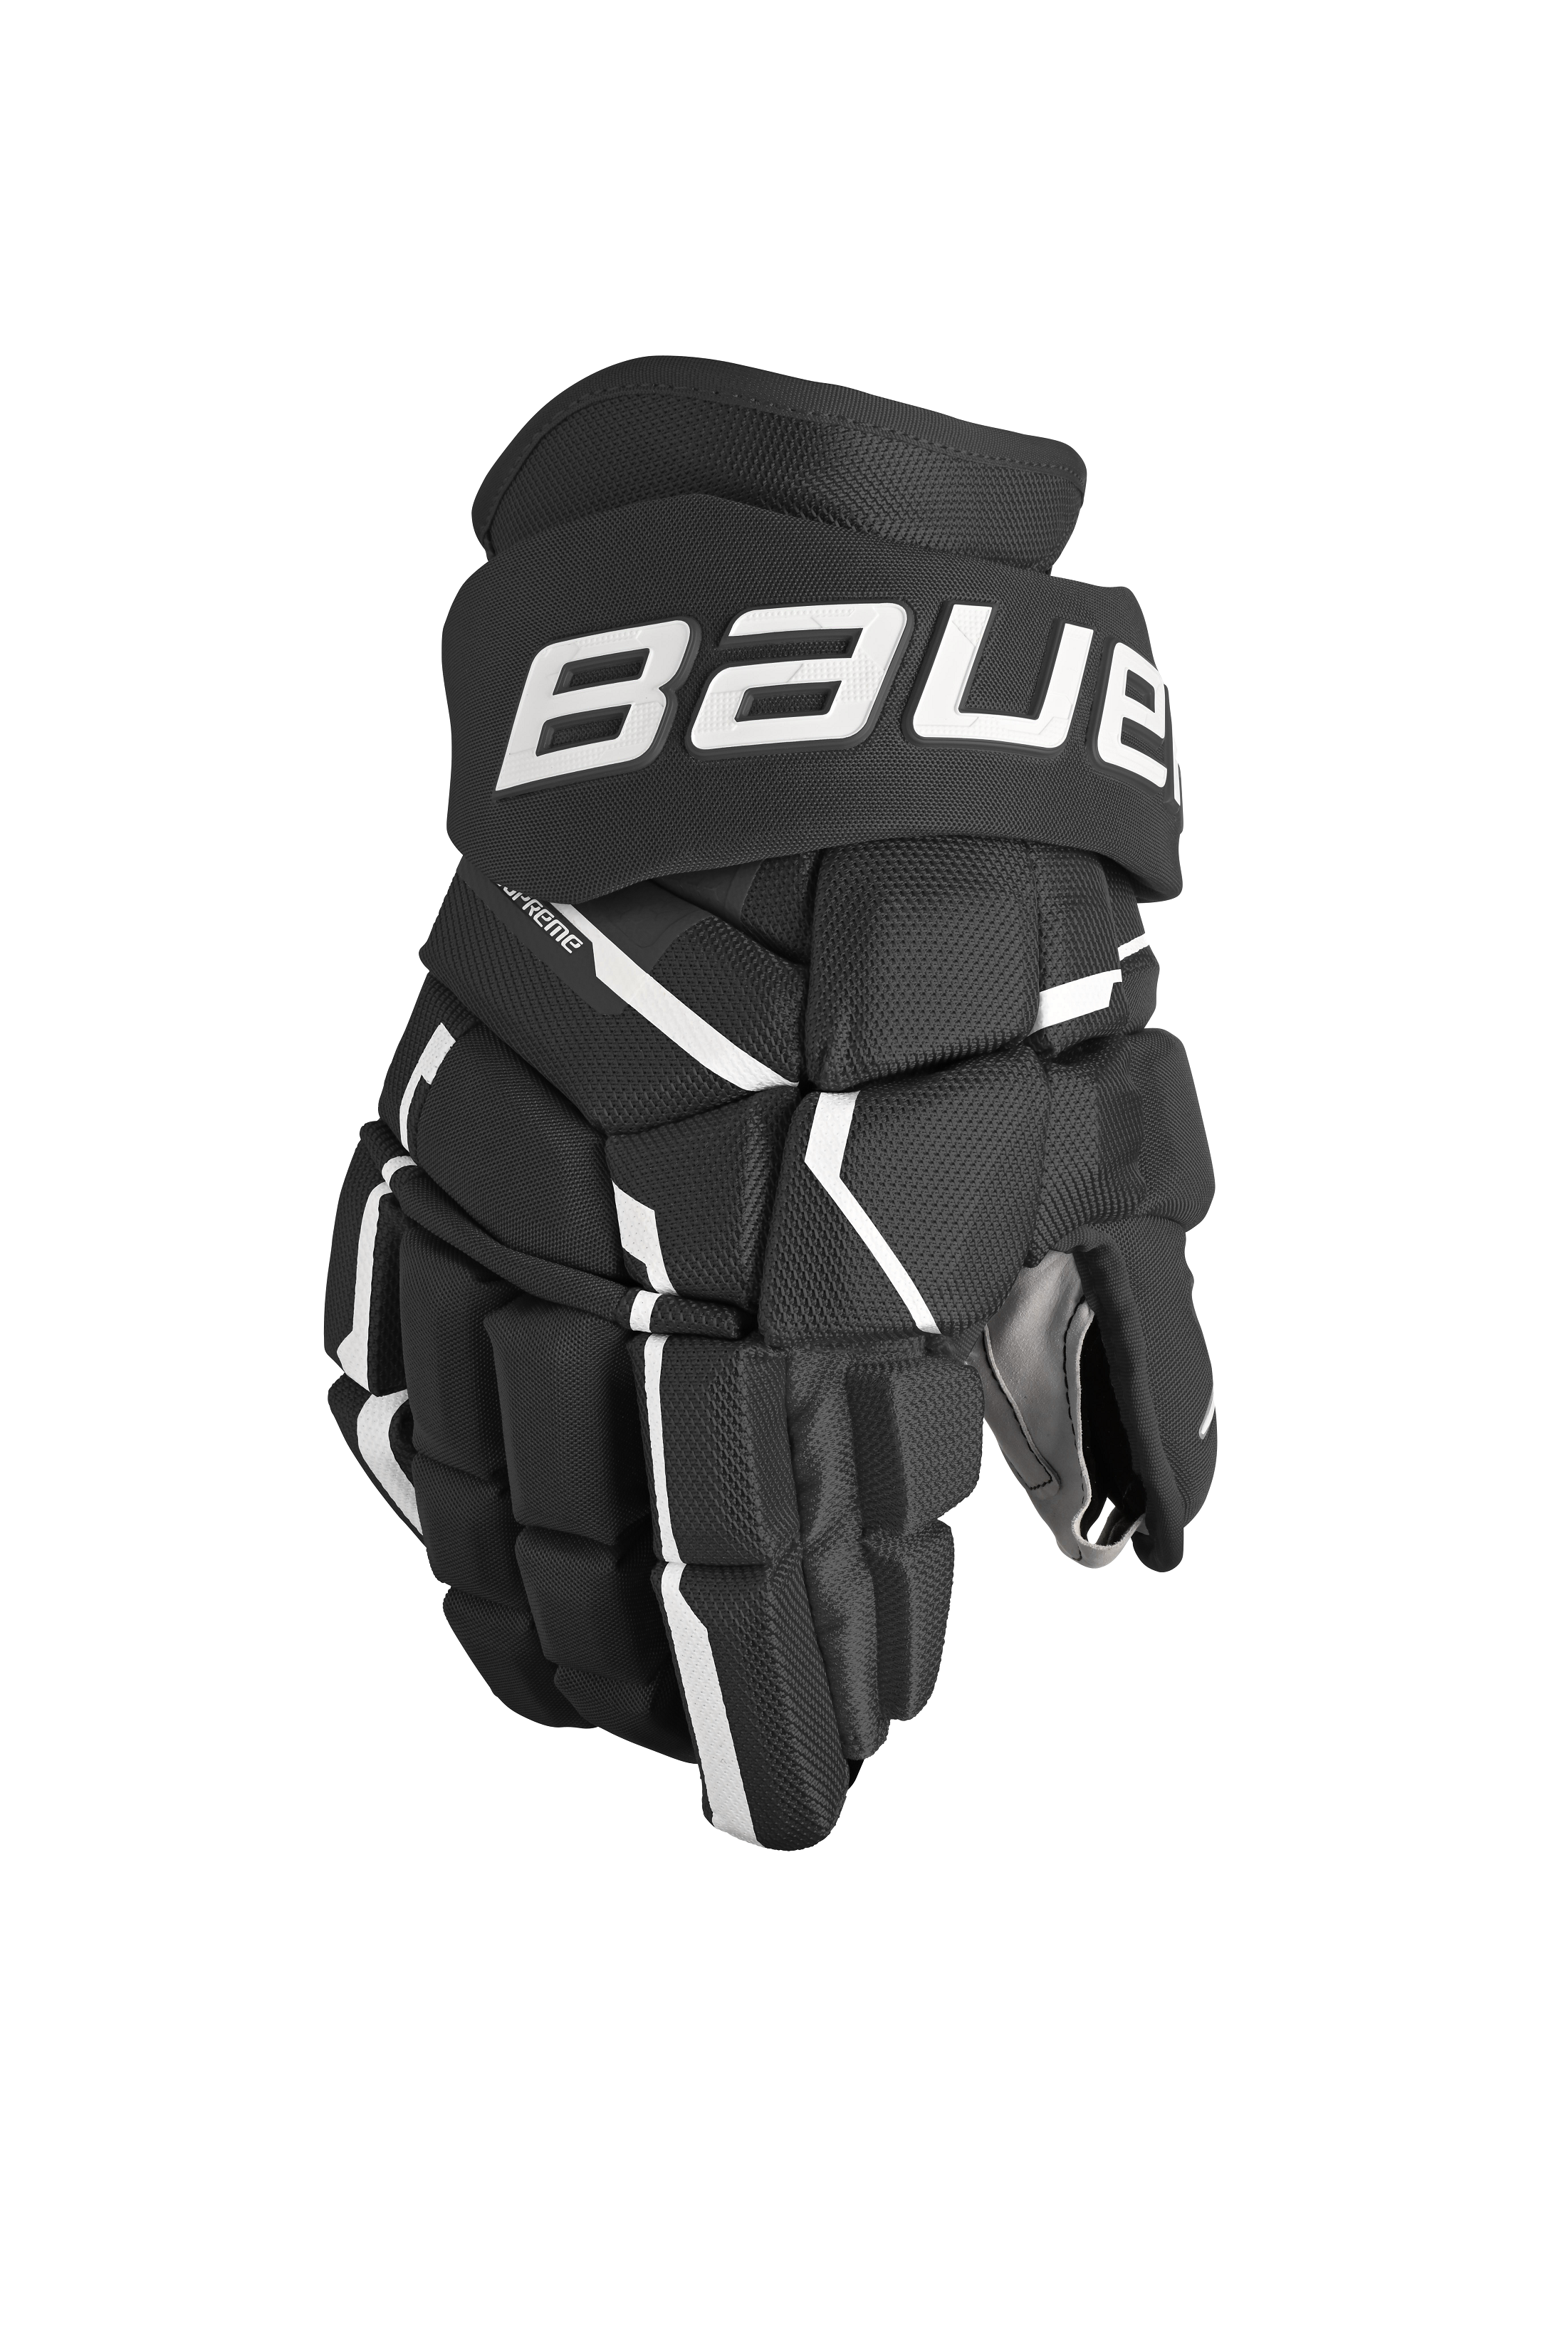 Bauer Flex Practice Jersey - Black - Hockey Services